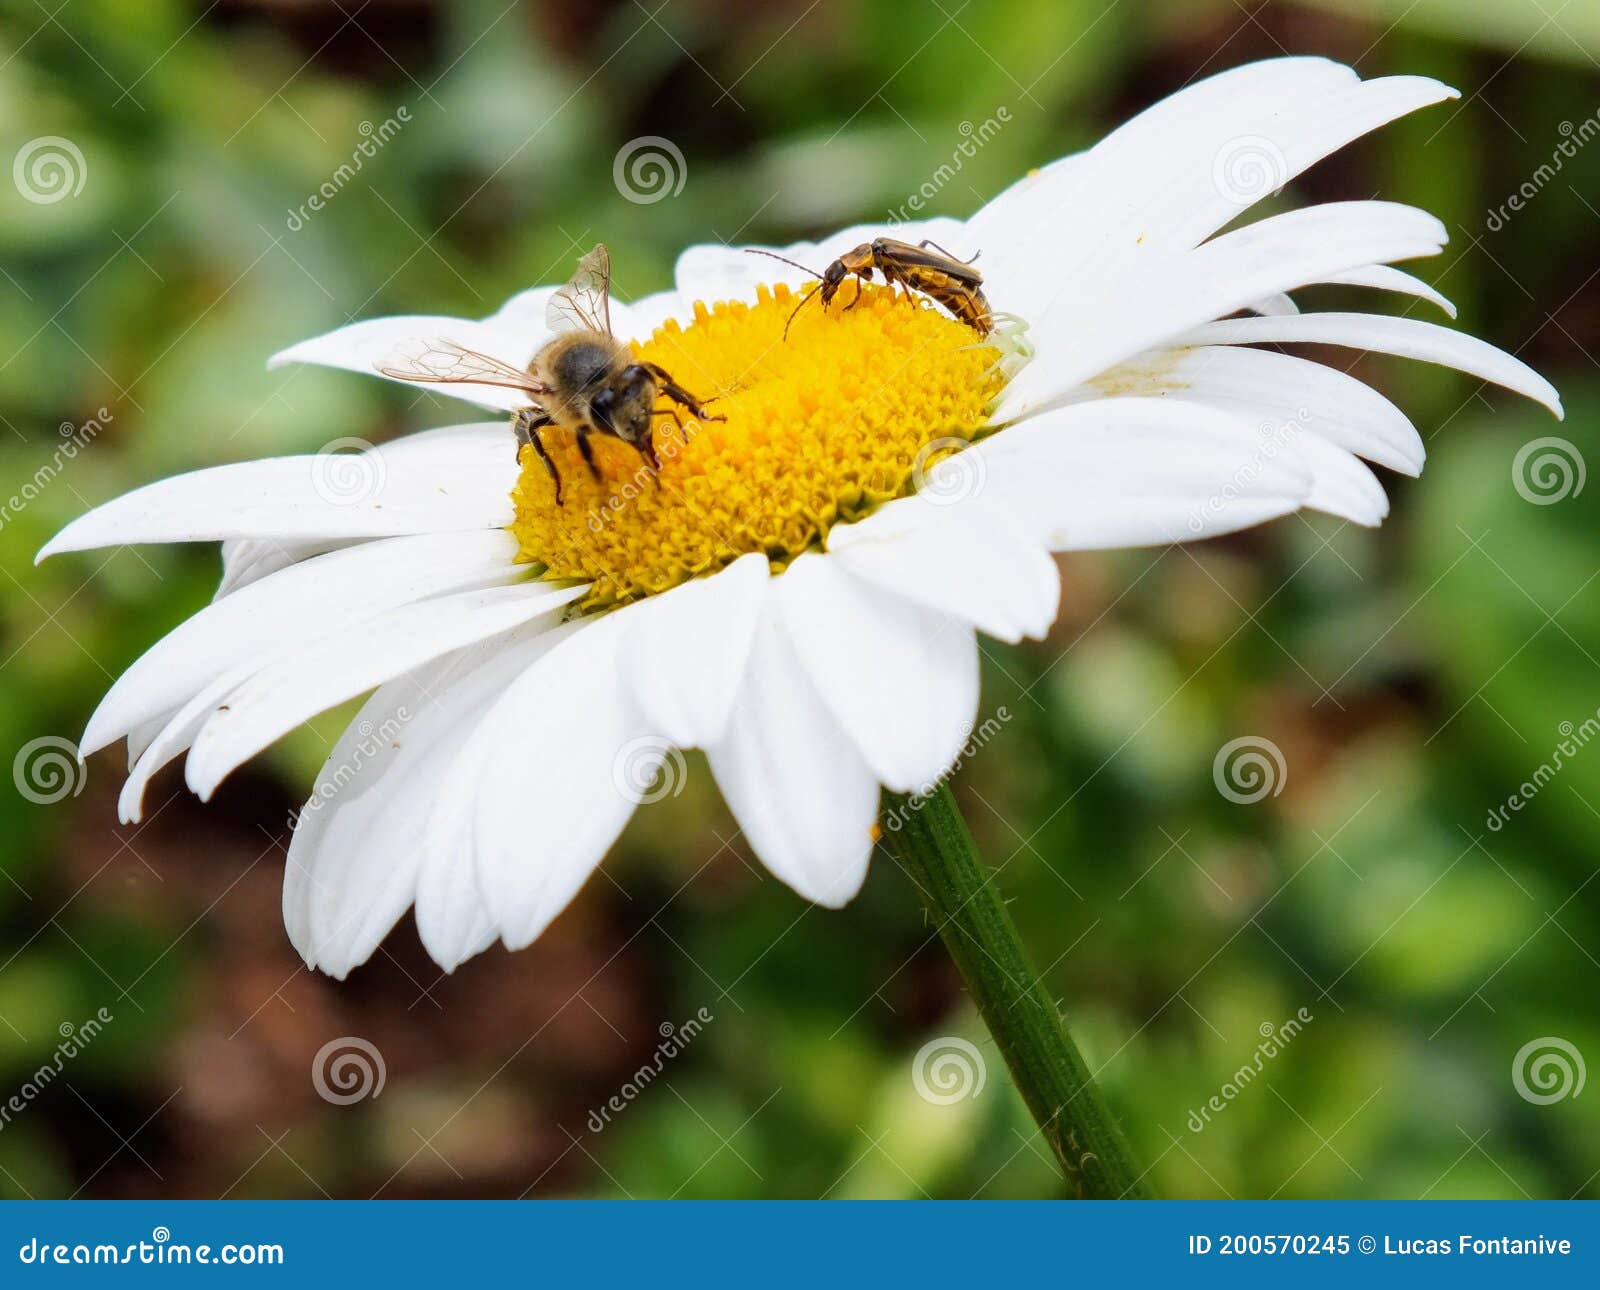 abelhas buscando seu alimento em uma flor